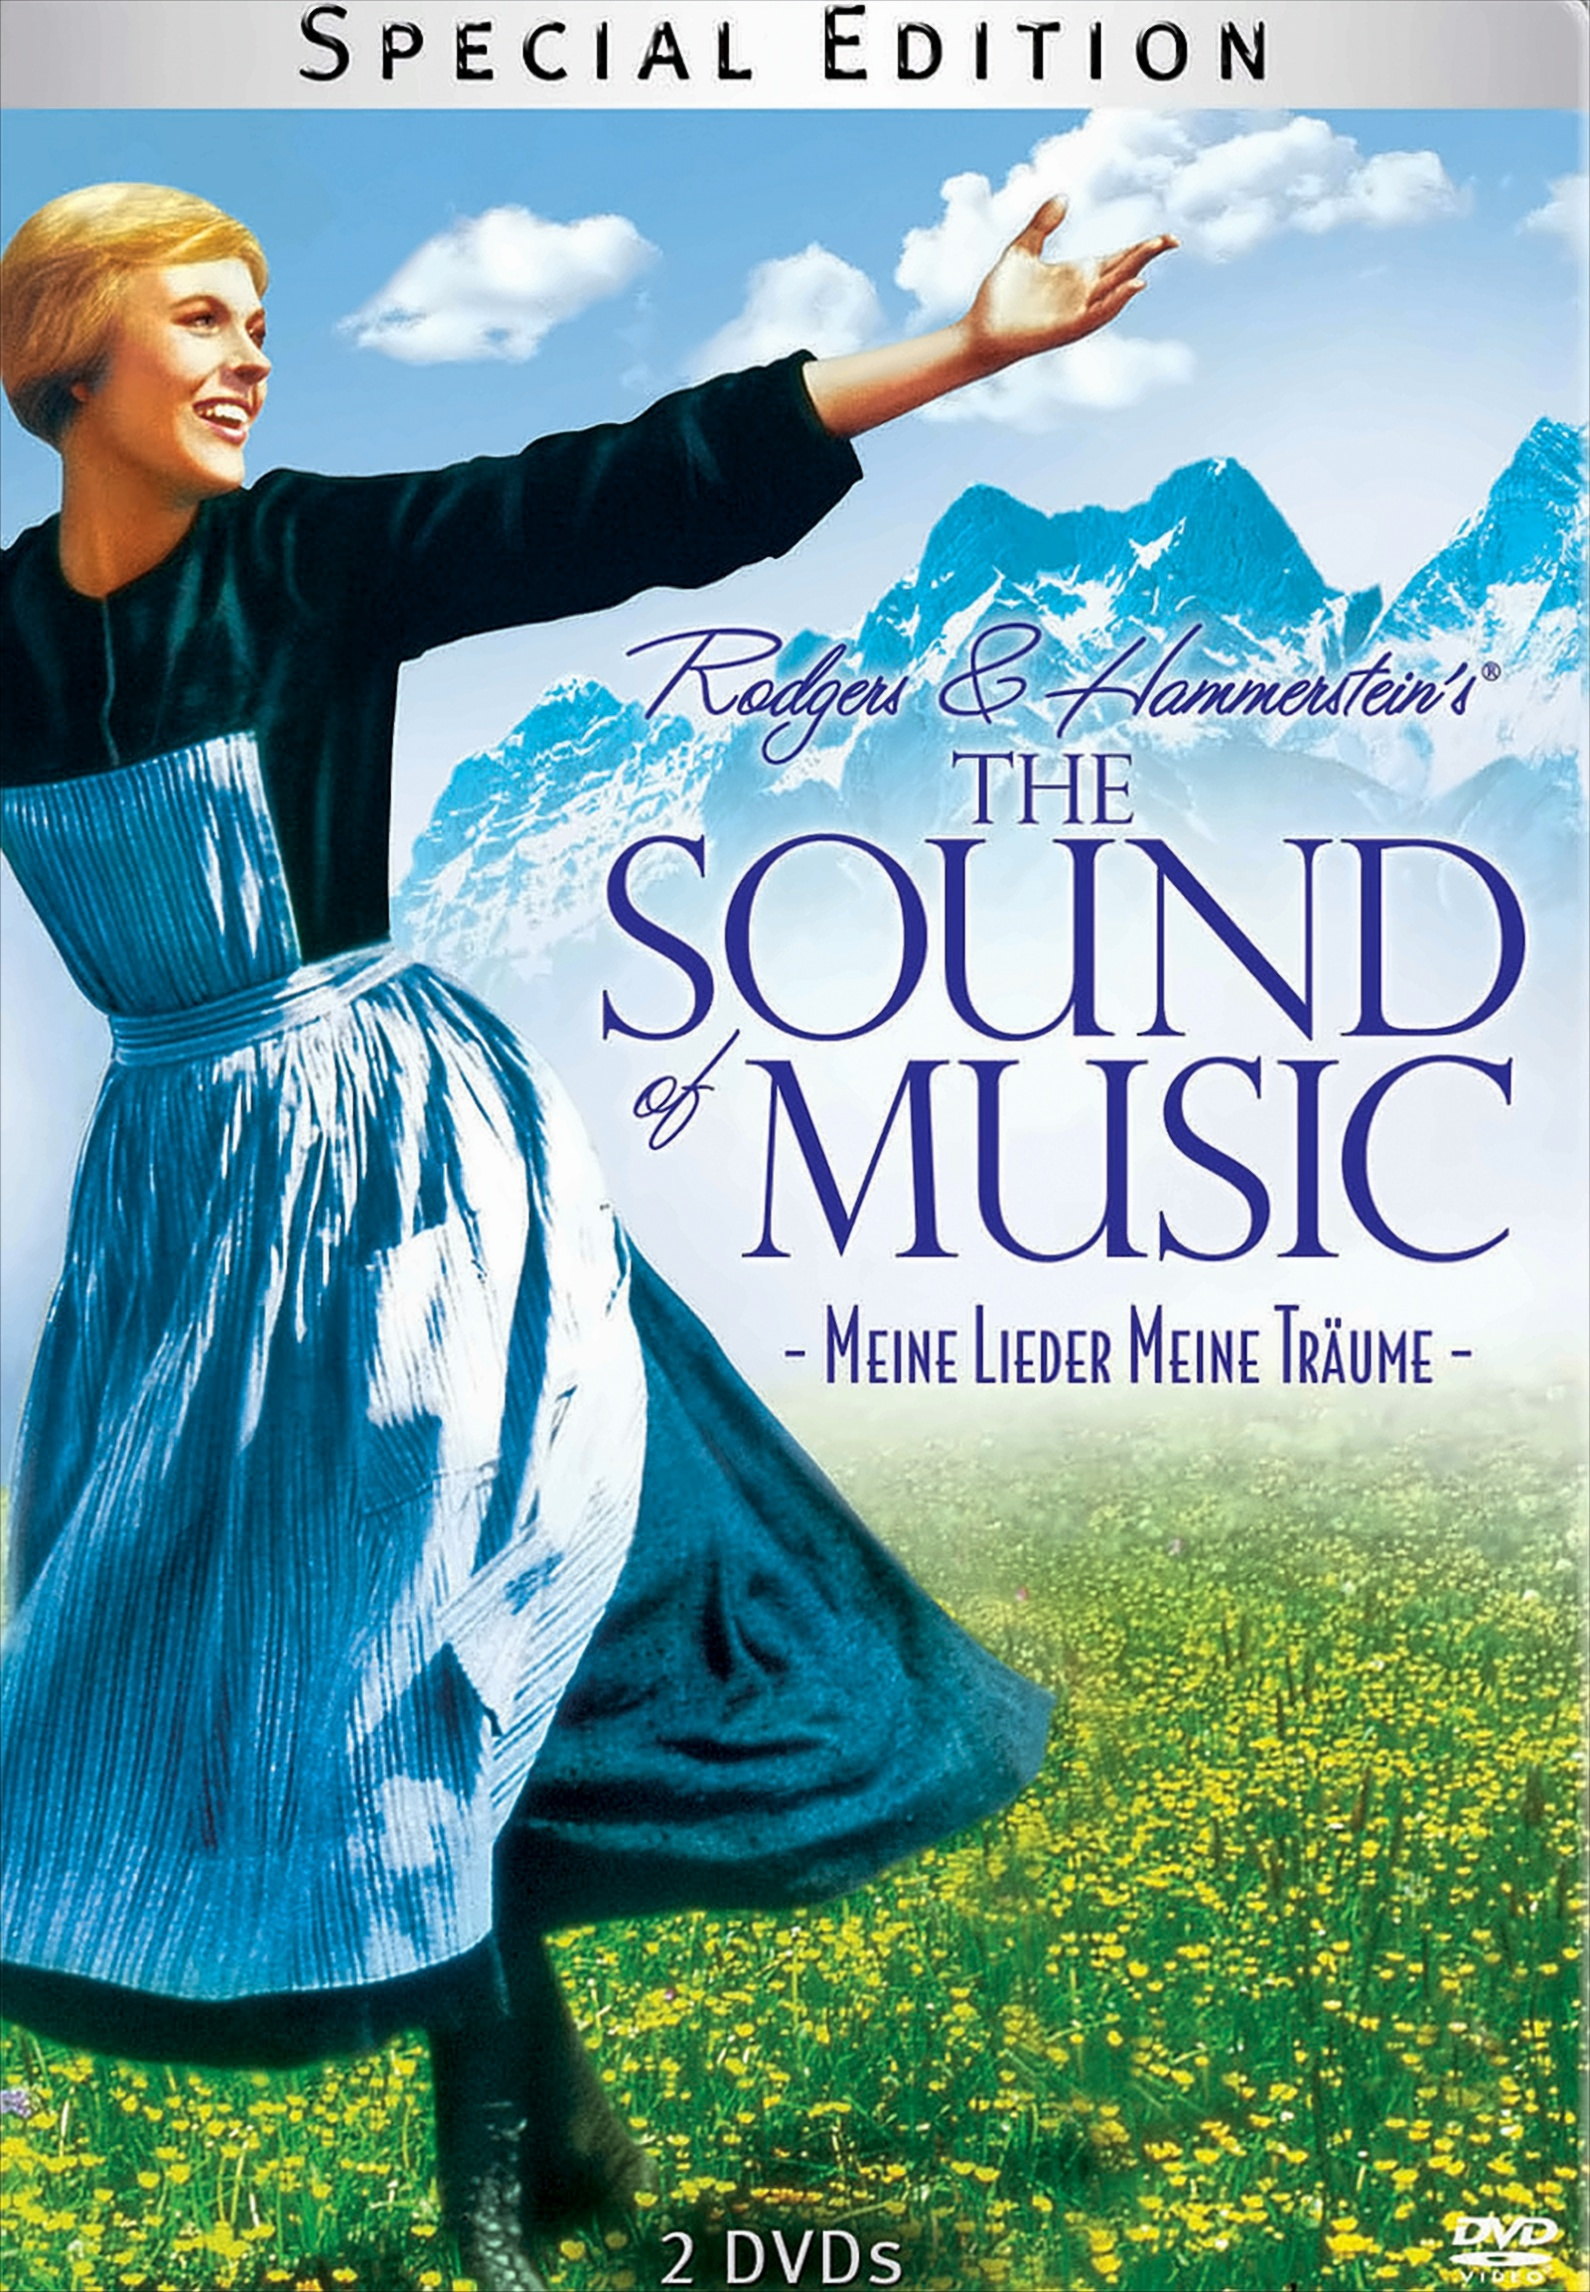 The Sound - Lieder, Meine Edition, DVD Träume Meine of 2 Music Steelbook) (Special im DVDs